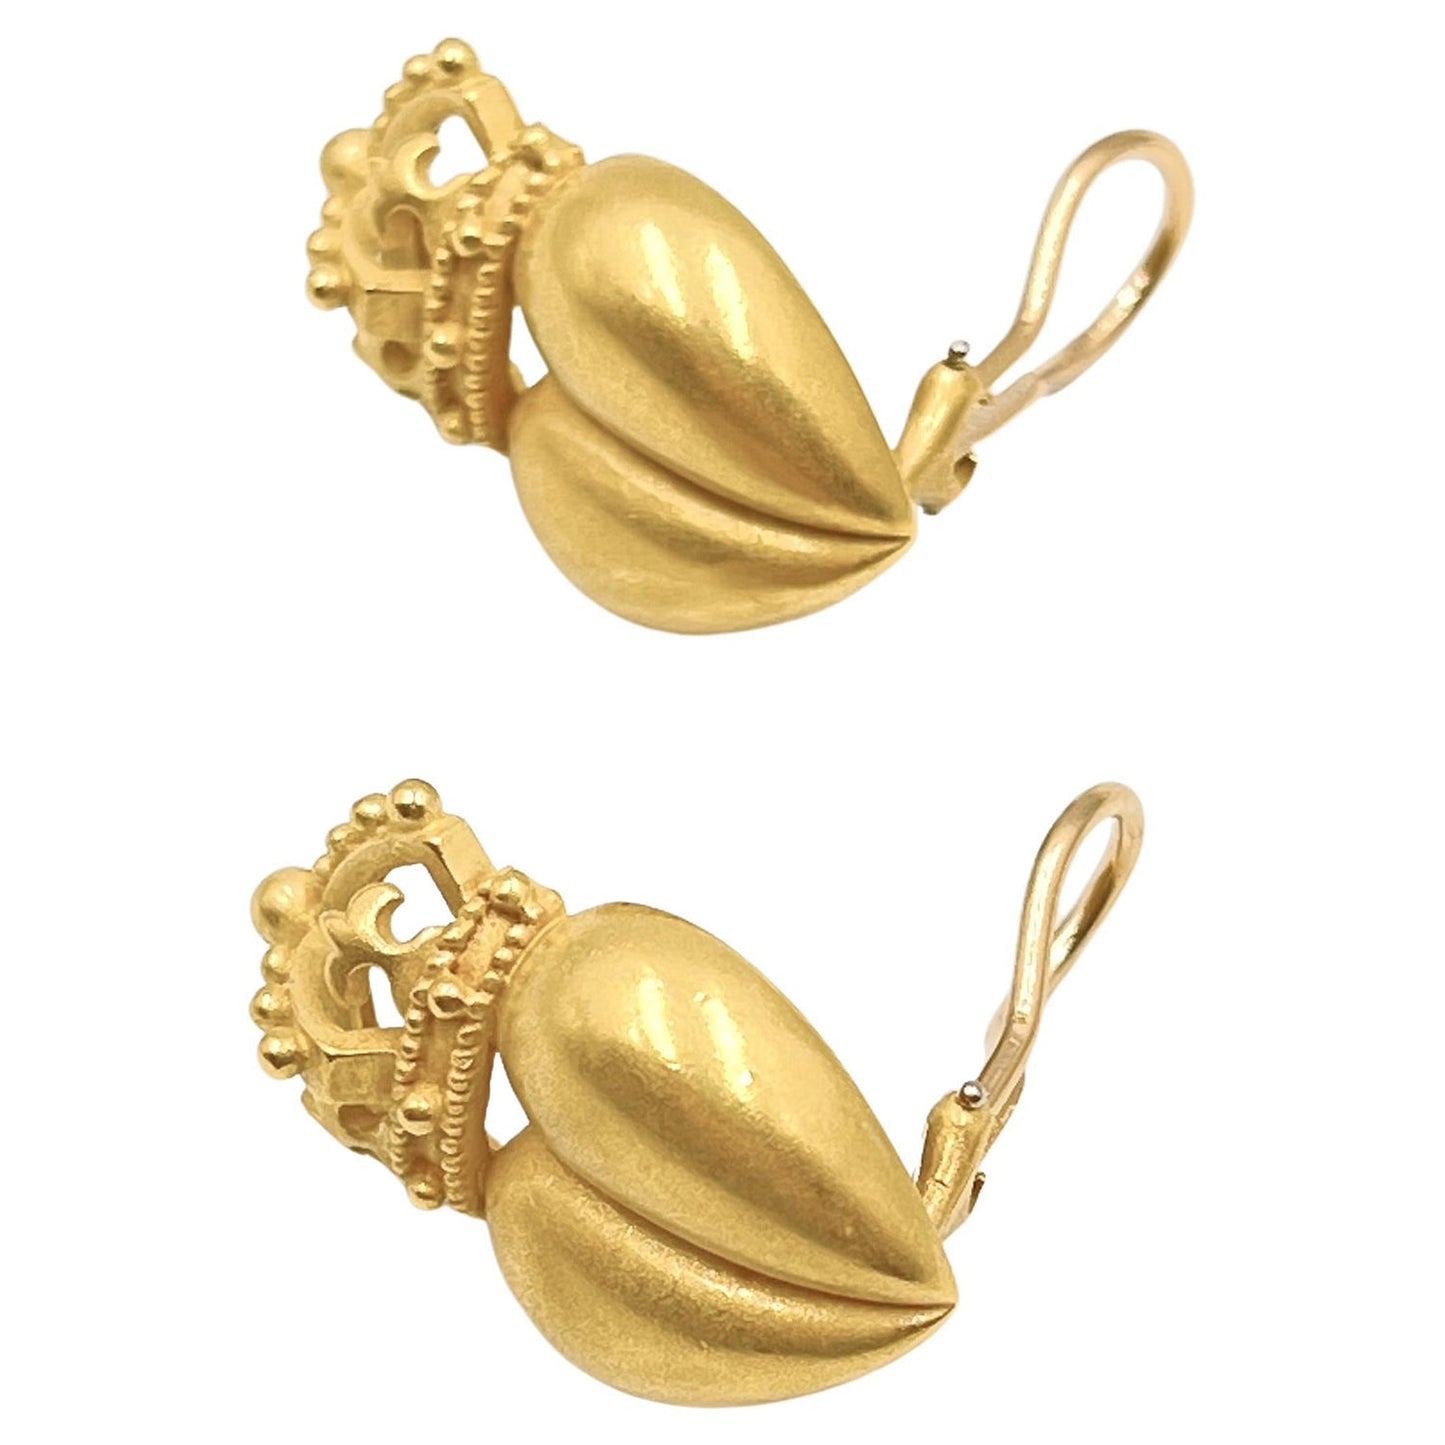 Kieselstein-Cord - 18k Yellow Gold Crowned Heart Earrings